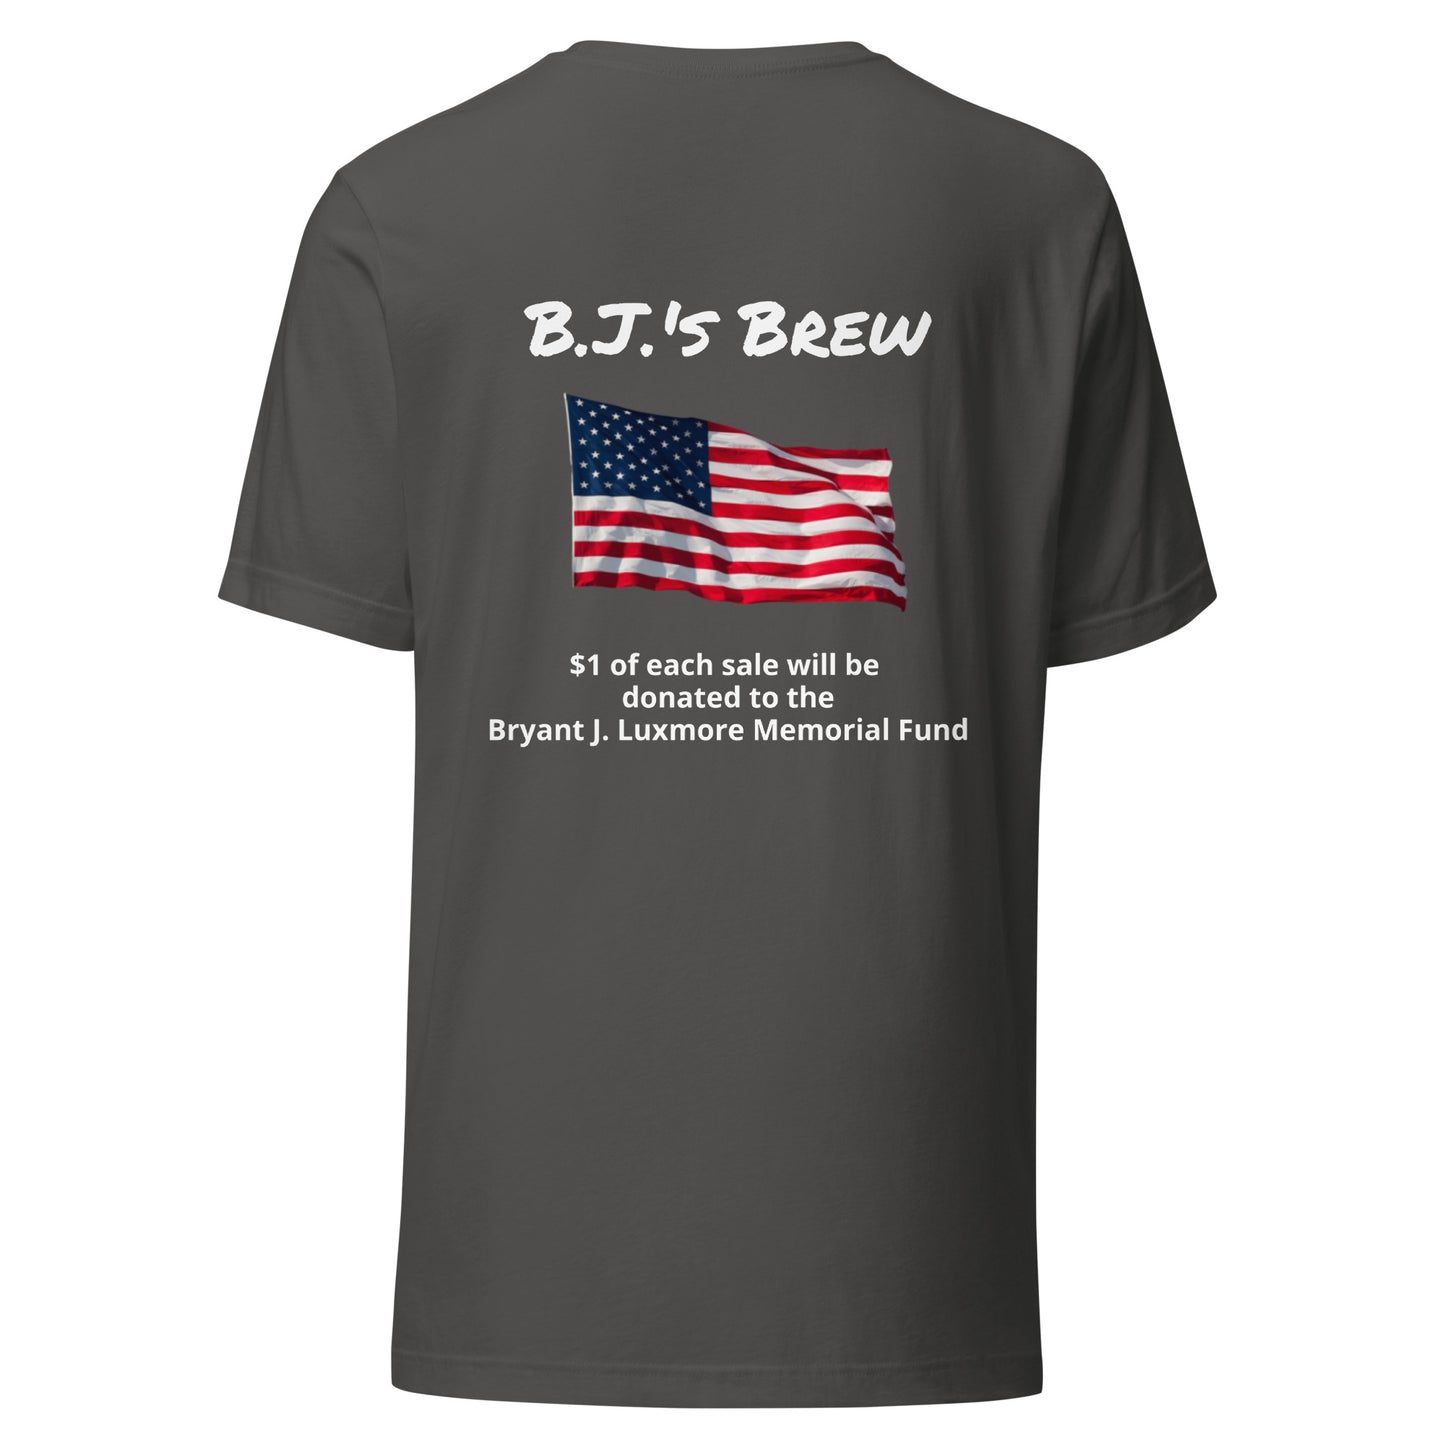 B.J.'s Brew (White Lettering) unisex t-shirt